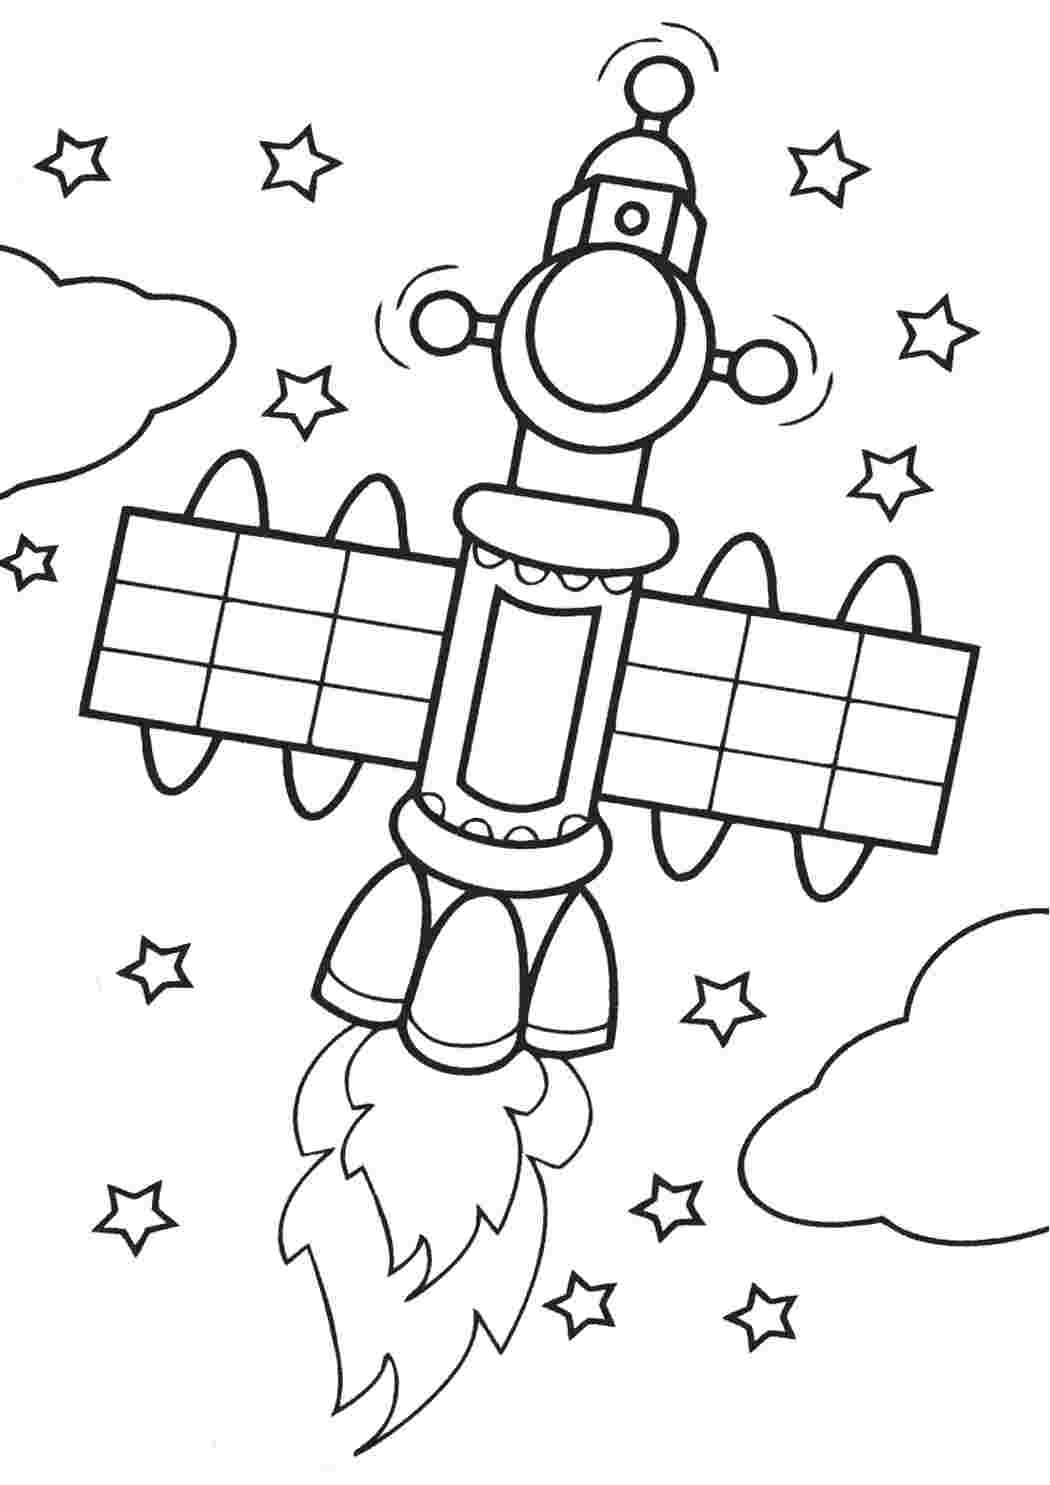 Тема космос для детей 4 лет. Раскраска. В космосе. Космос раскраска для детей. Раскраска для малышей. Космос. Раскраска на тему космос для детей.